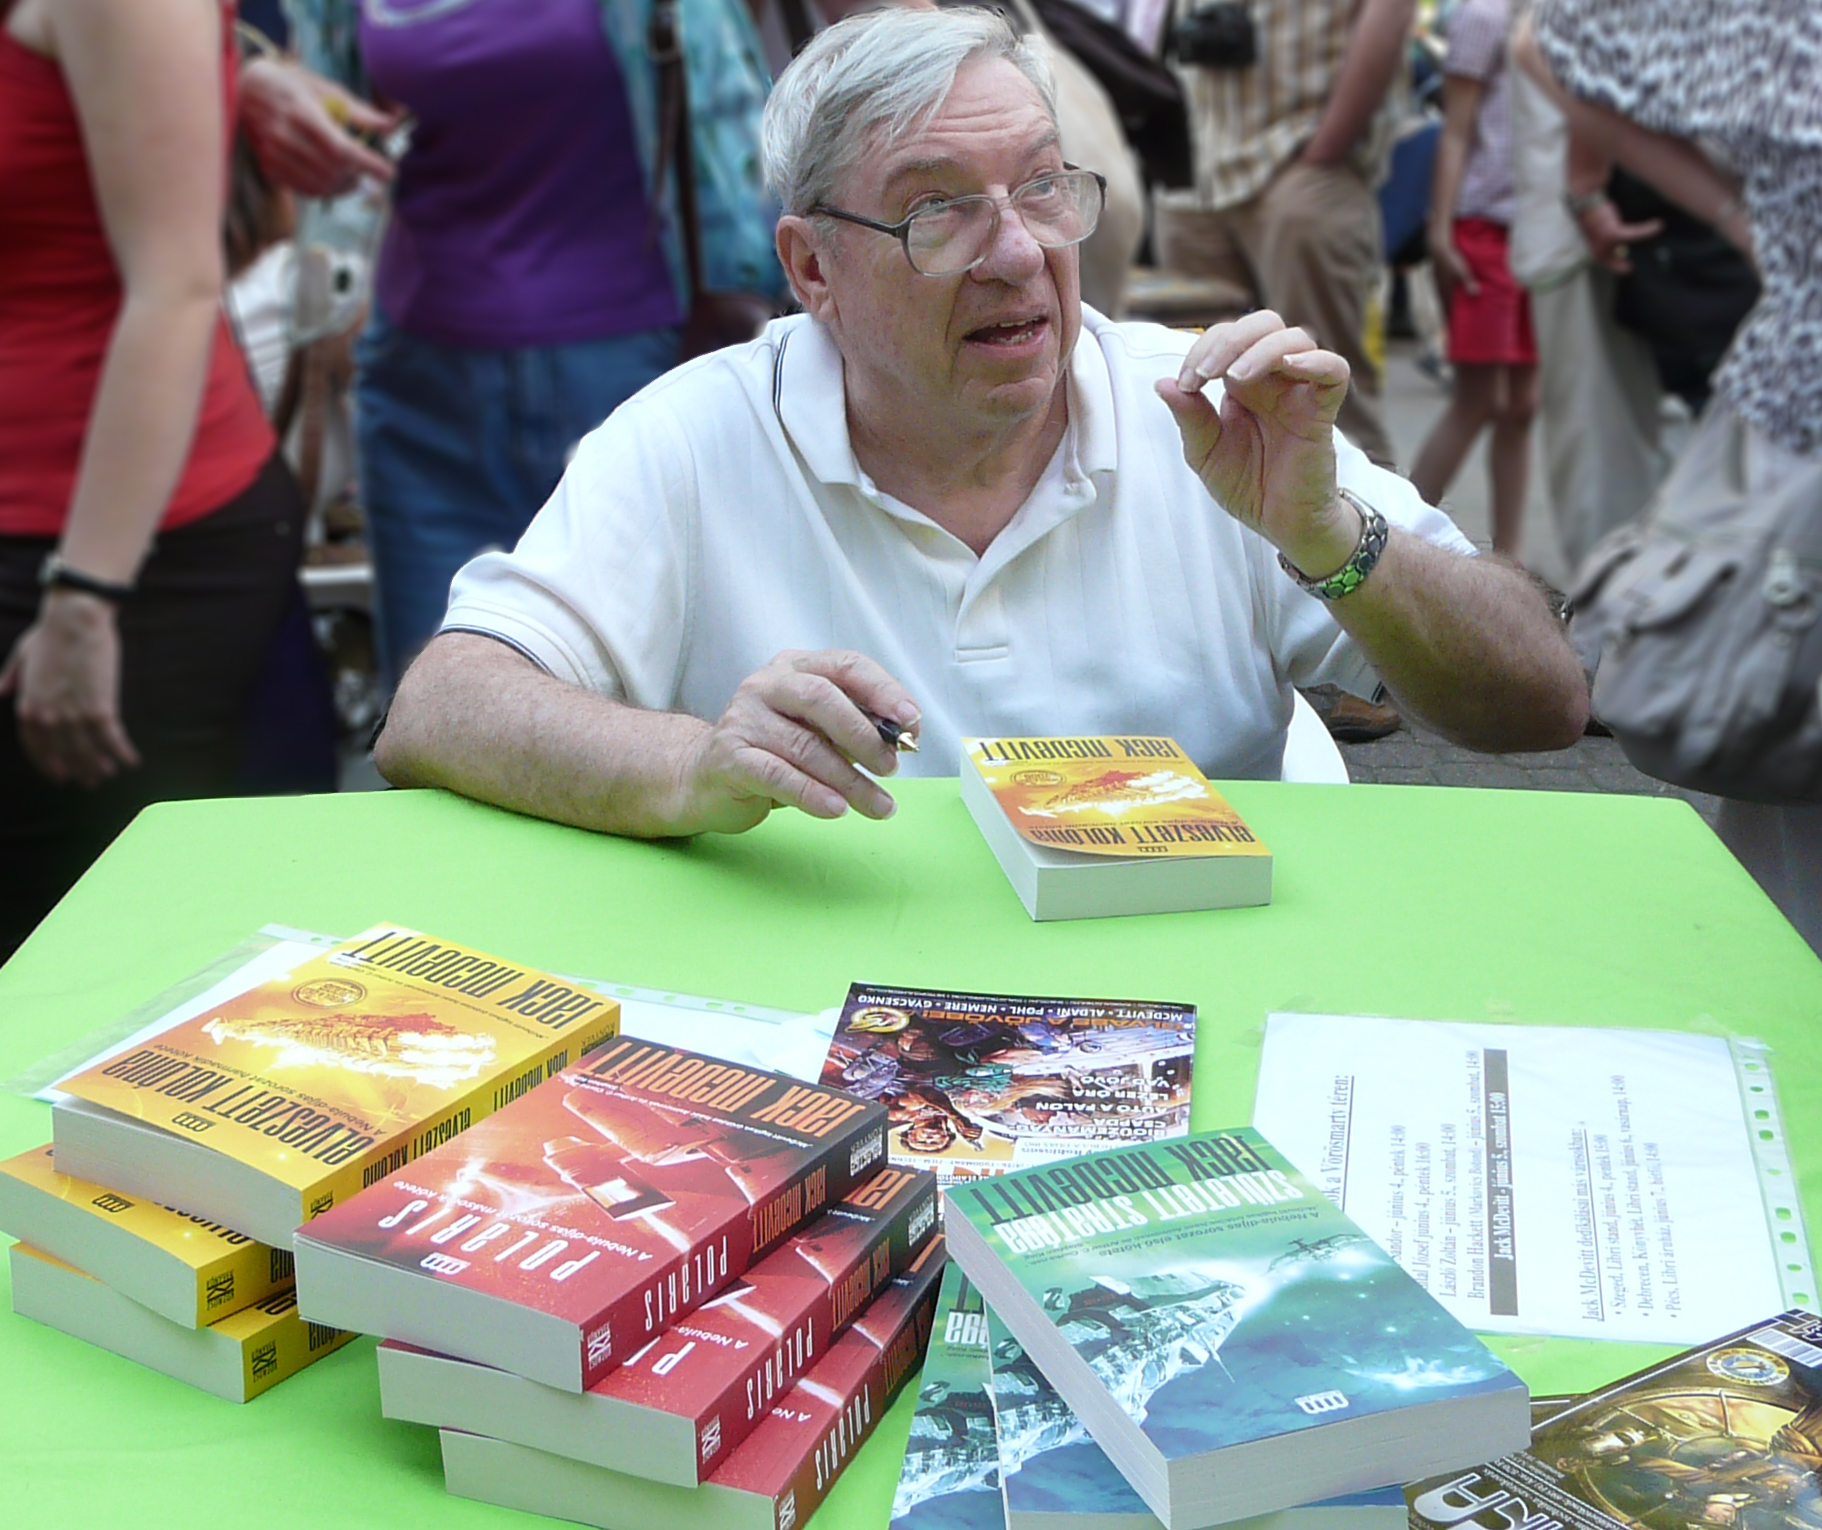 McDevitt at the Festive Bookweek in Budapest, 2010